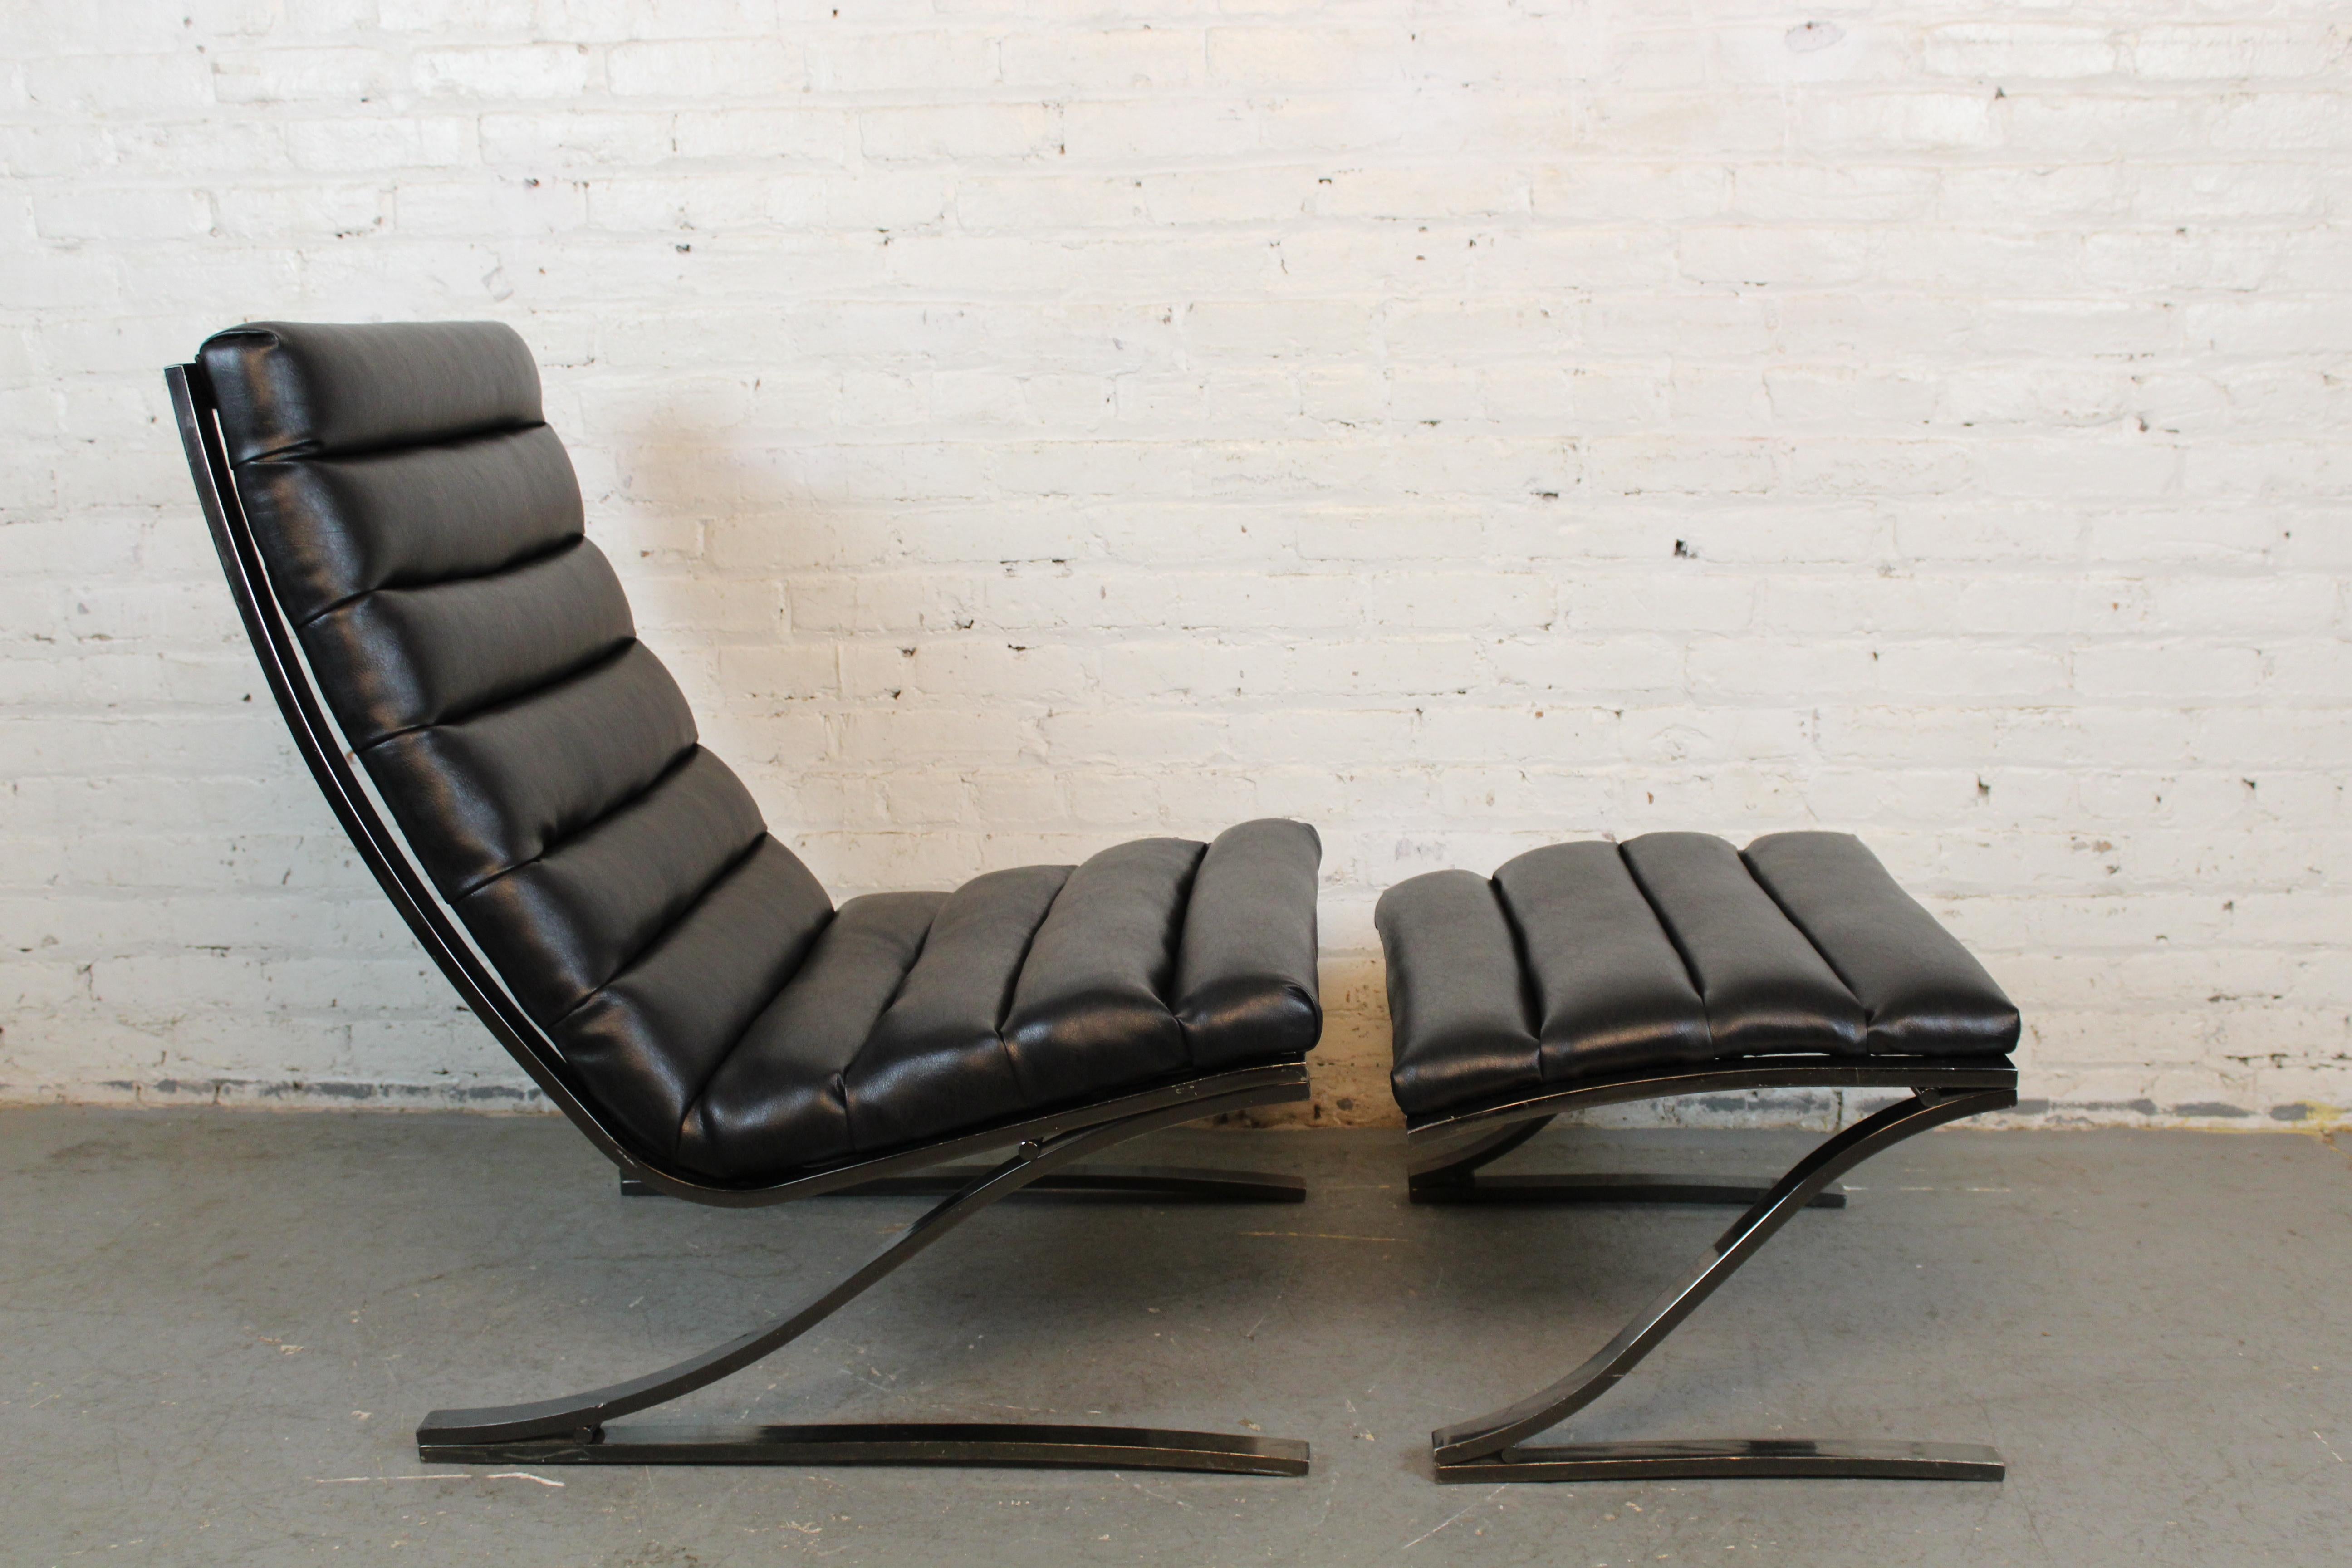 Holen Sie sich den fabelhaften Stil postmoderner Möbel nach Hause - mit dieser fantastischen, freitragenden Scoop-Lounge mit Ottomane vom Design Institute America (DIA) aus dem Jahr 1986. Neu gepolstert in luxuriösem schwarzem veganem Leder und mit